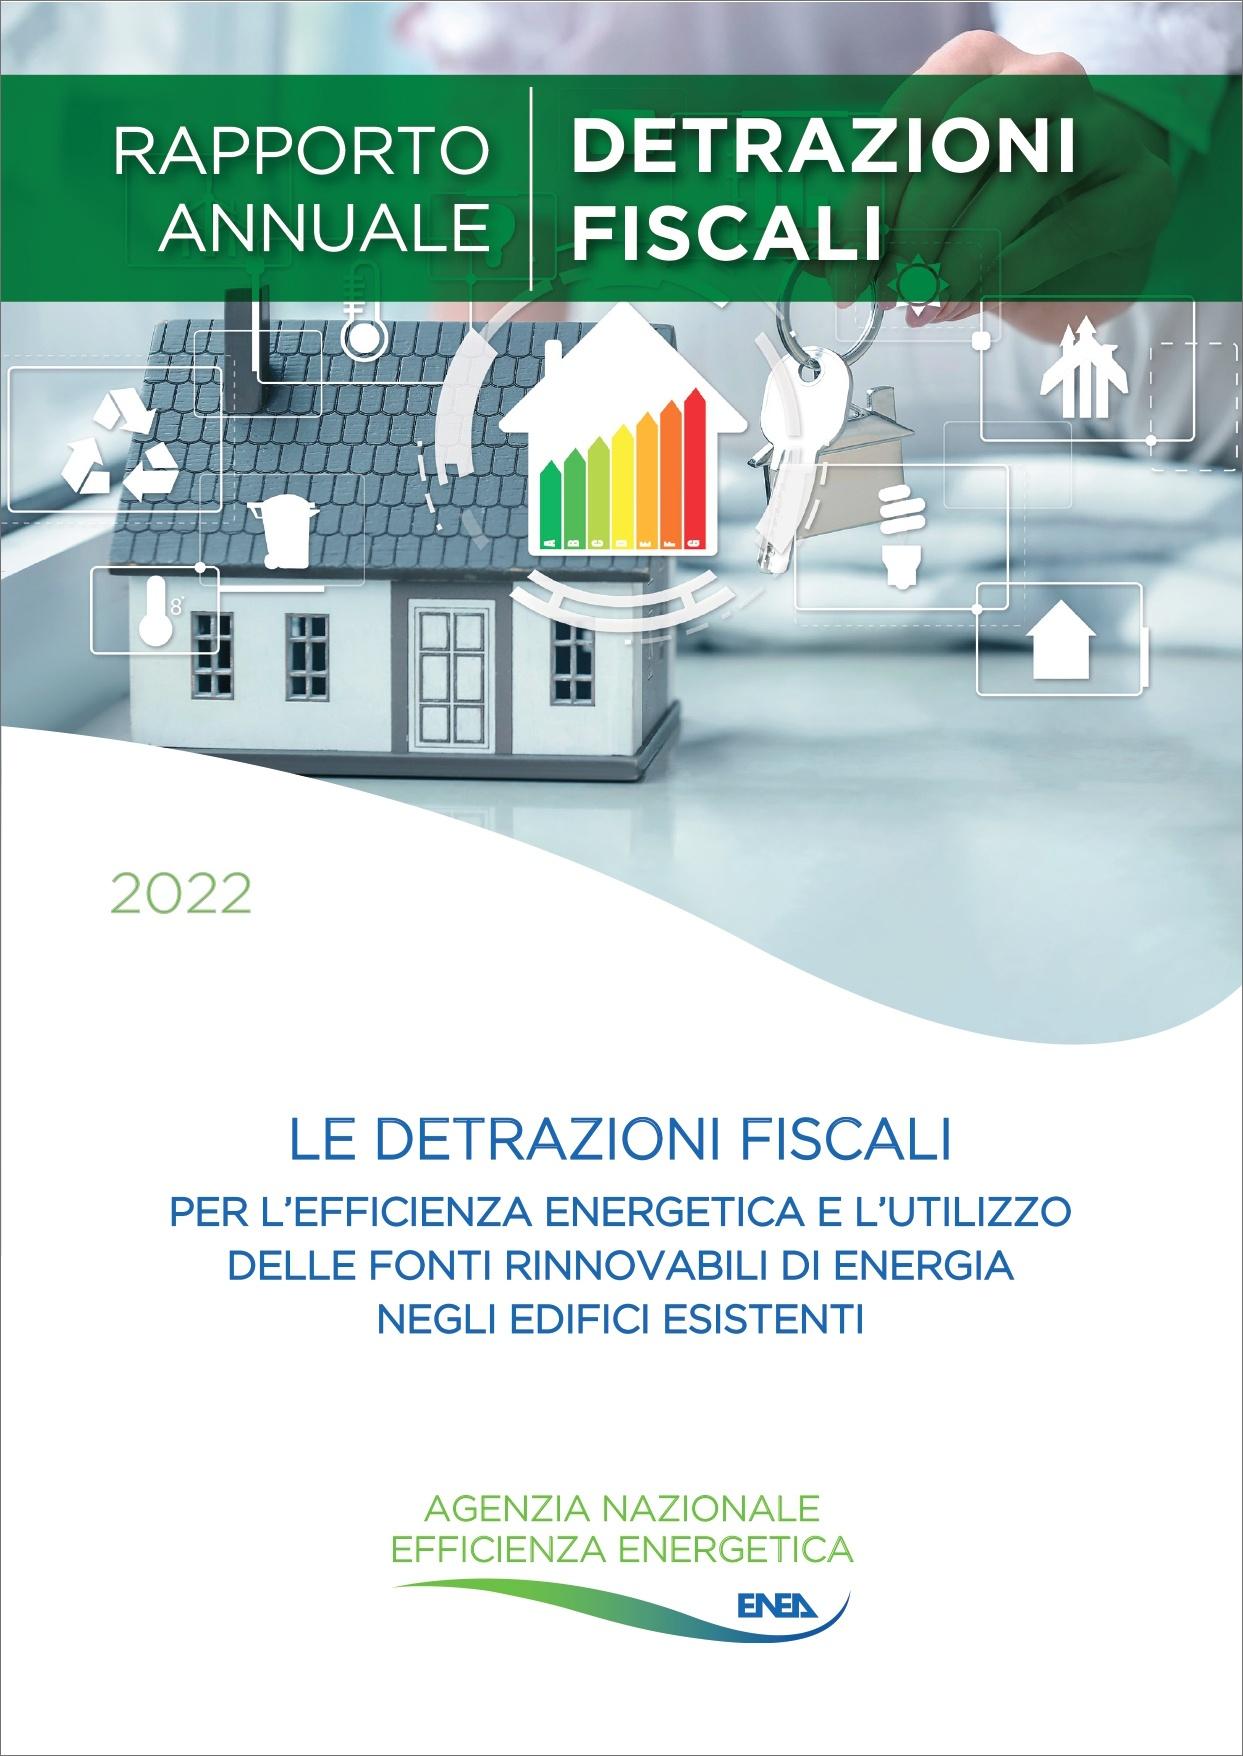 Le detrazioni fiscali per l’efficienza energetica e l’utilizzo delle fonti rinnovabili di energia negli edifici esistenti - Rapporto Annuale 2022